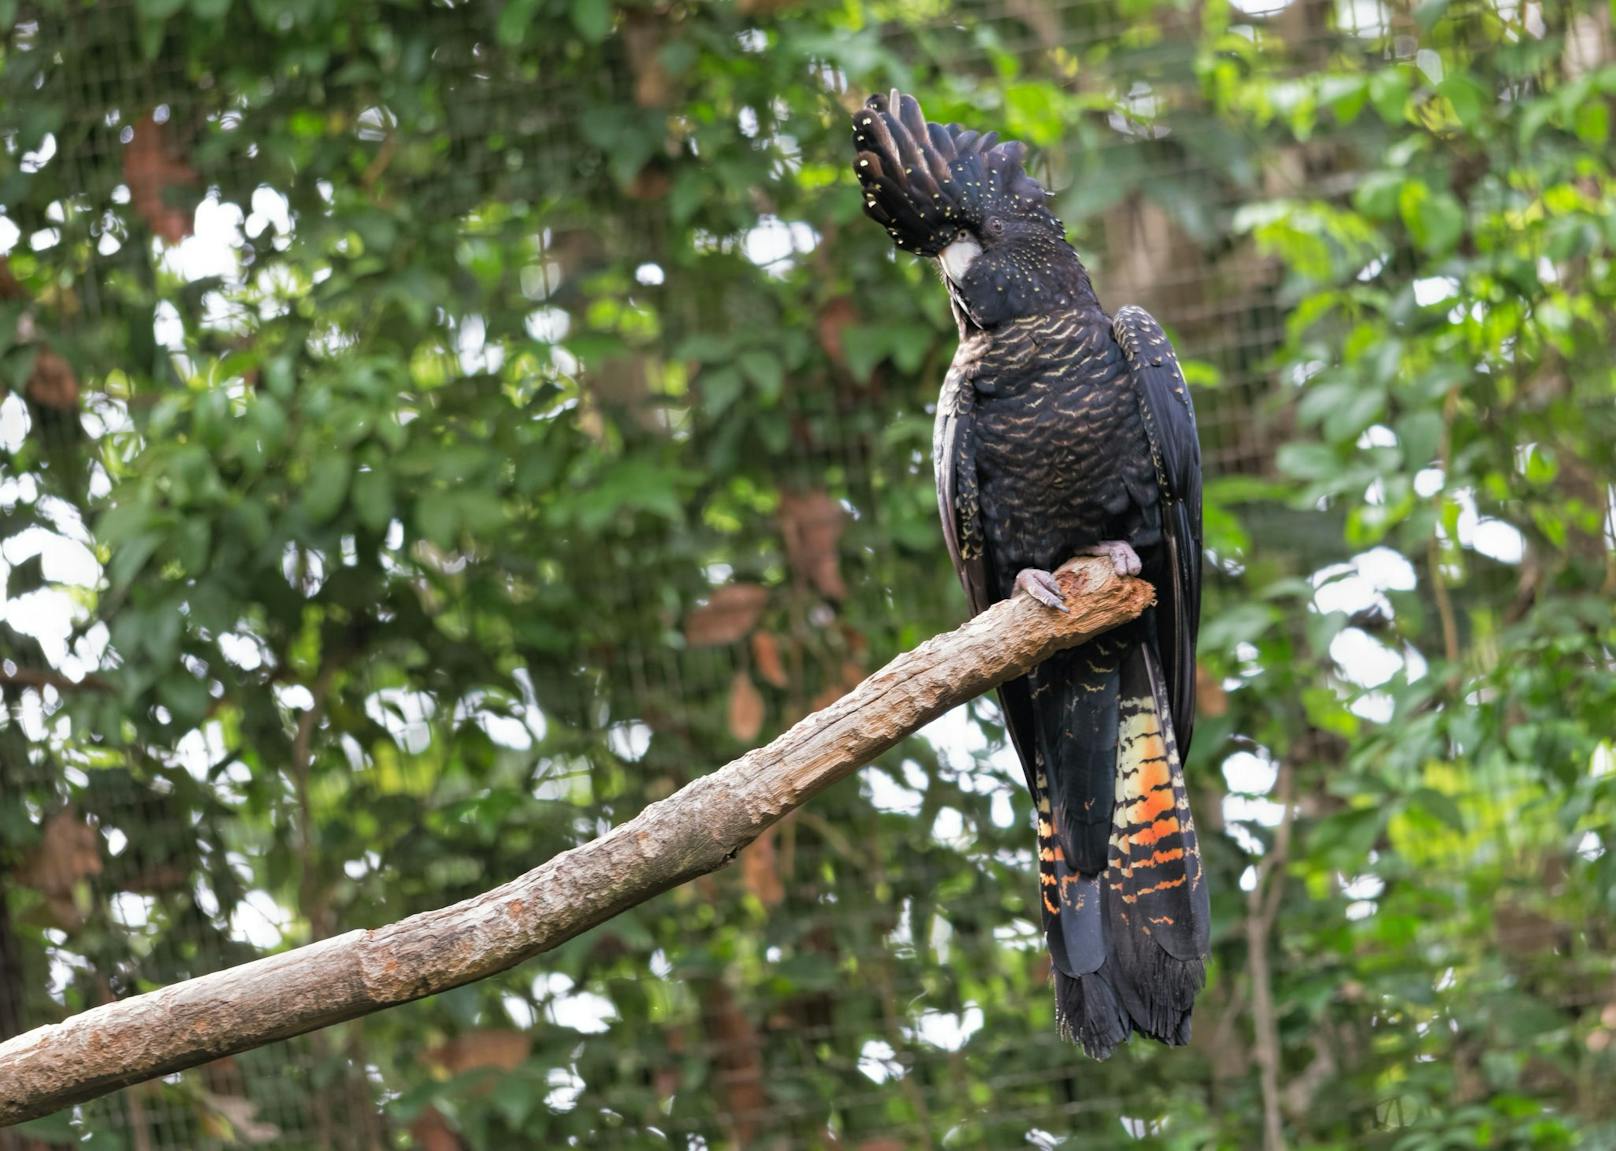 Dieser Kakadu kann eine Länge von 60 Zentimeter erreichen und lebt in Schwärmen.